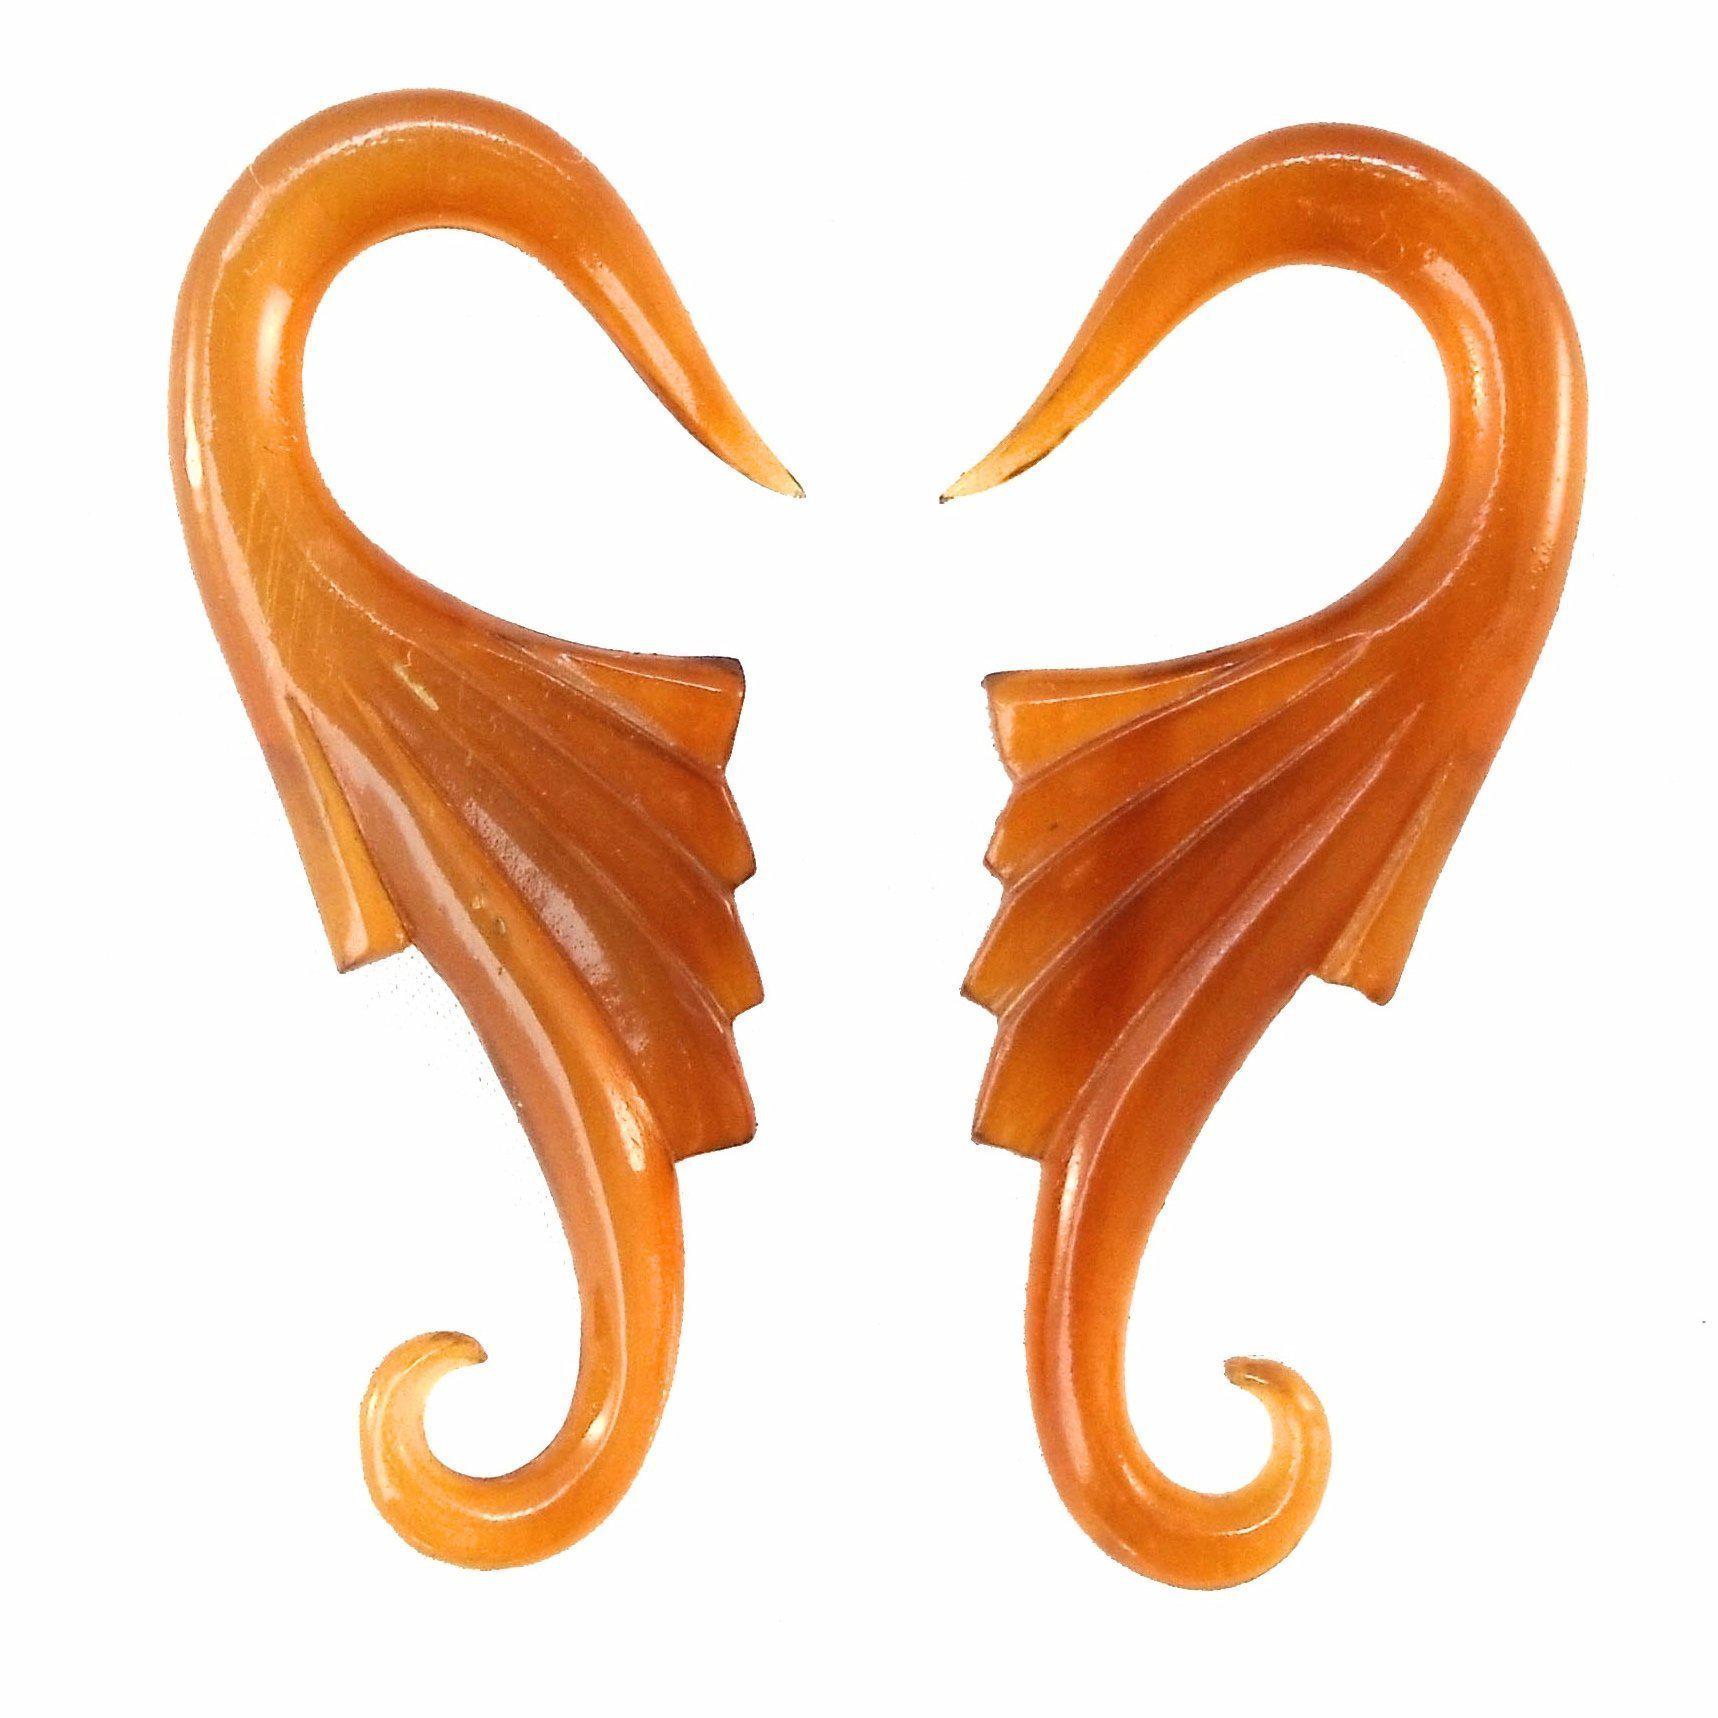 Body Jewelry :|: Wings. Amber Horn 4g gauge earrings.